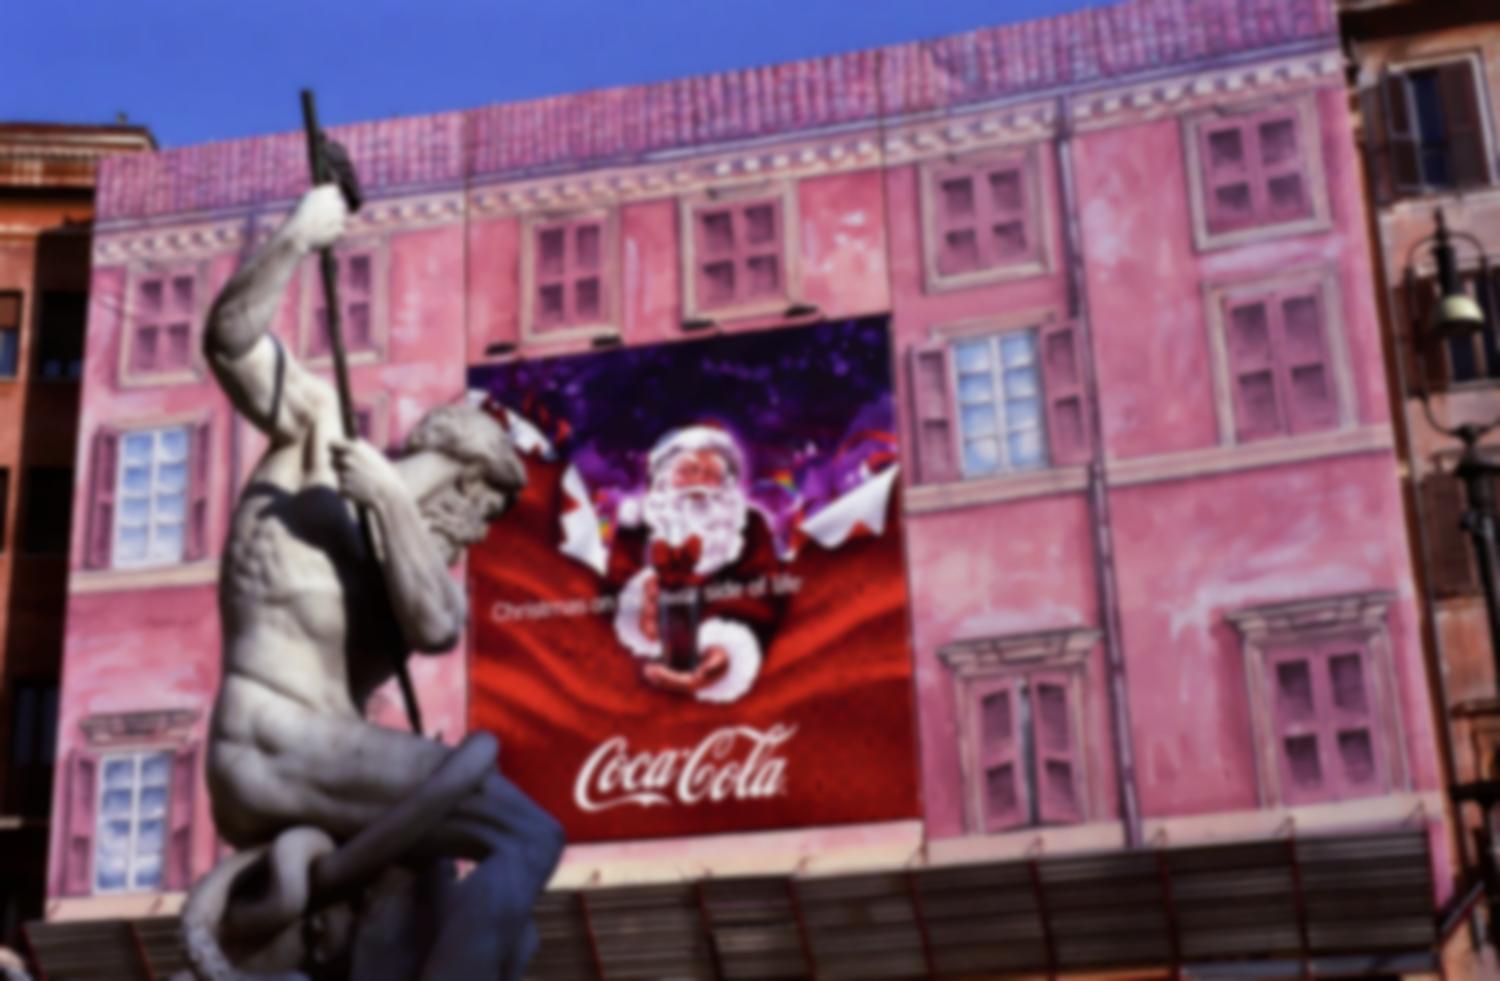 Piazza Navona, étalé sur la bâche en trompe-l'œil rose d'un échafaudage, le père Noël de Coca-Cola semble défier Neptune dans sa fontaine. Rome, décembre 2007.